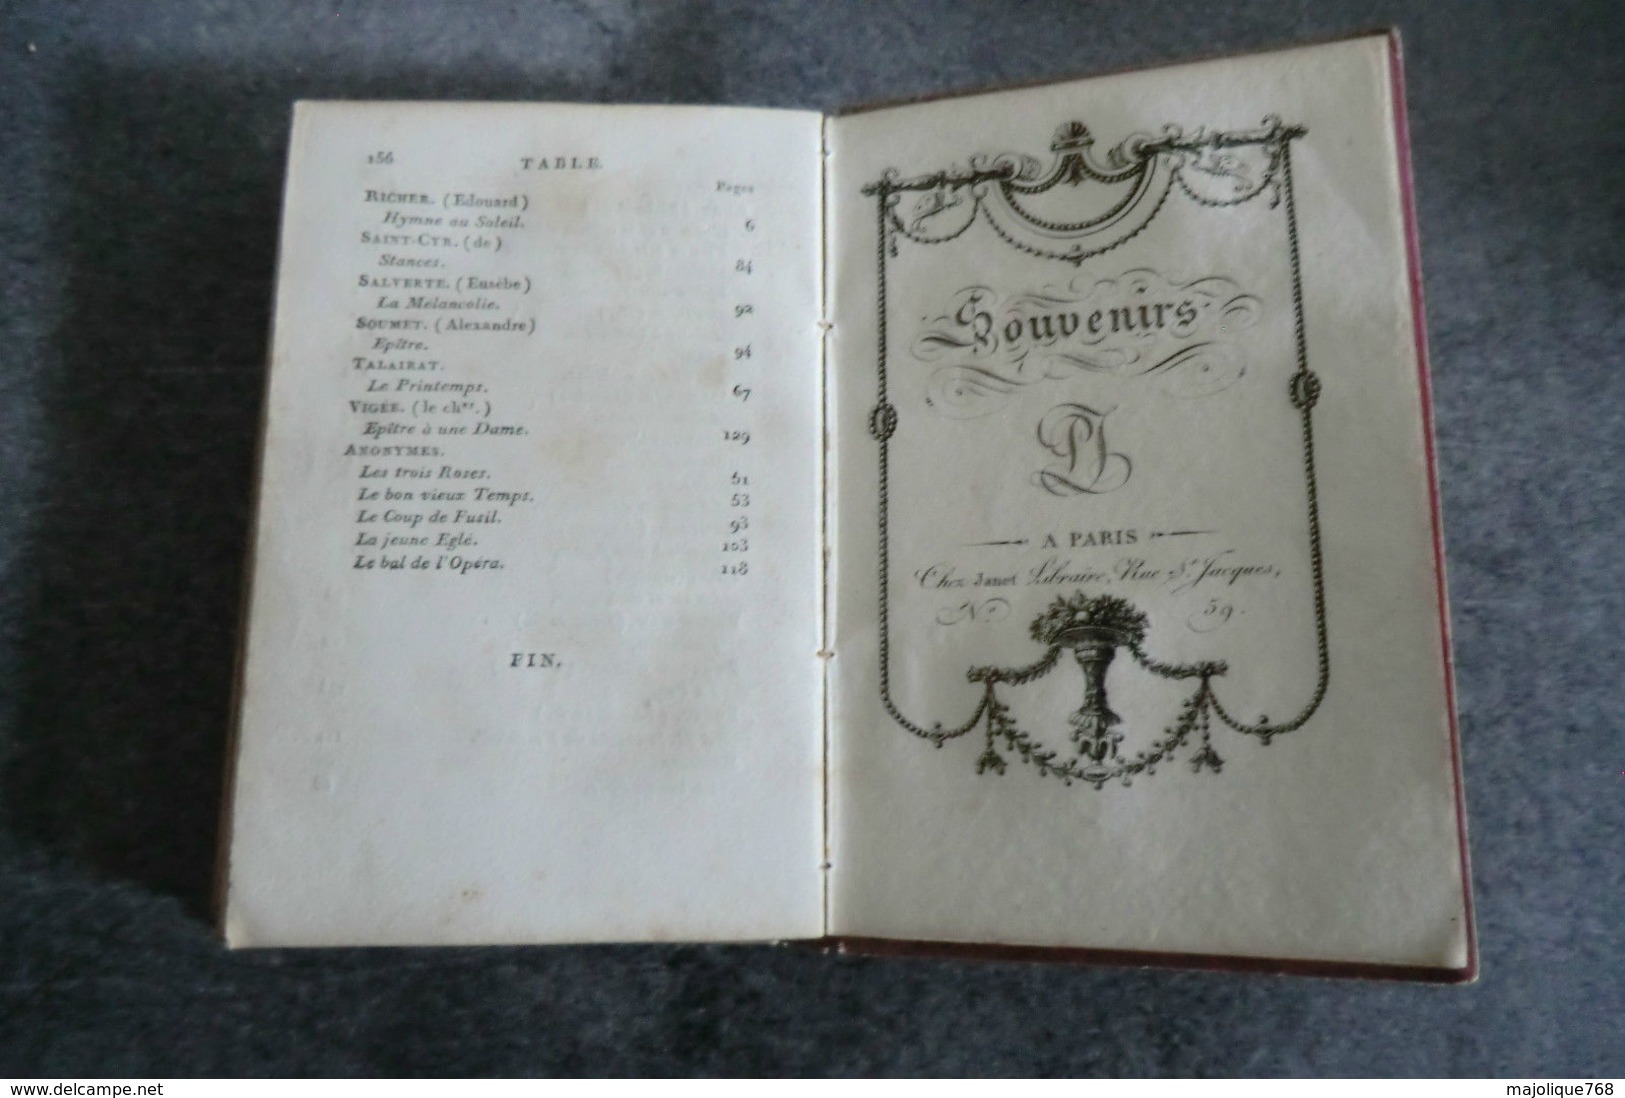 livre ancien - hommage aux dames - à paris chez janet - 1817 - 6 gravures et calendrier pour l'an 1817